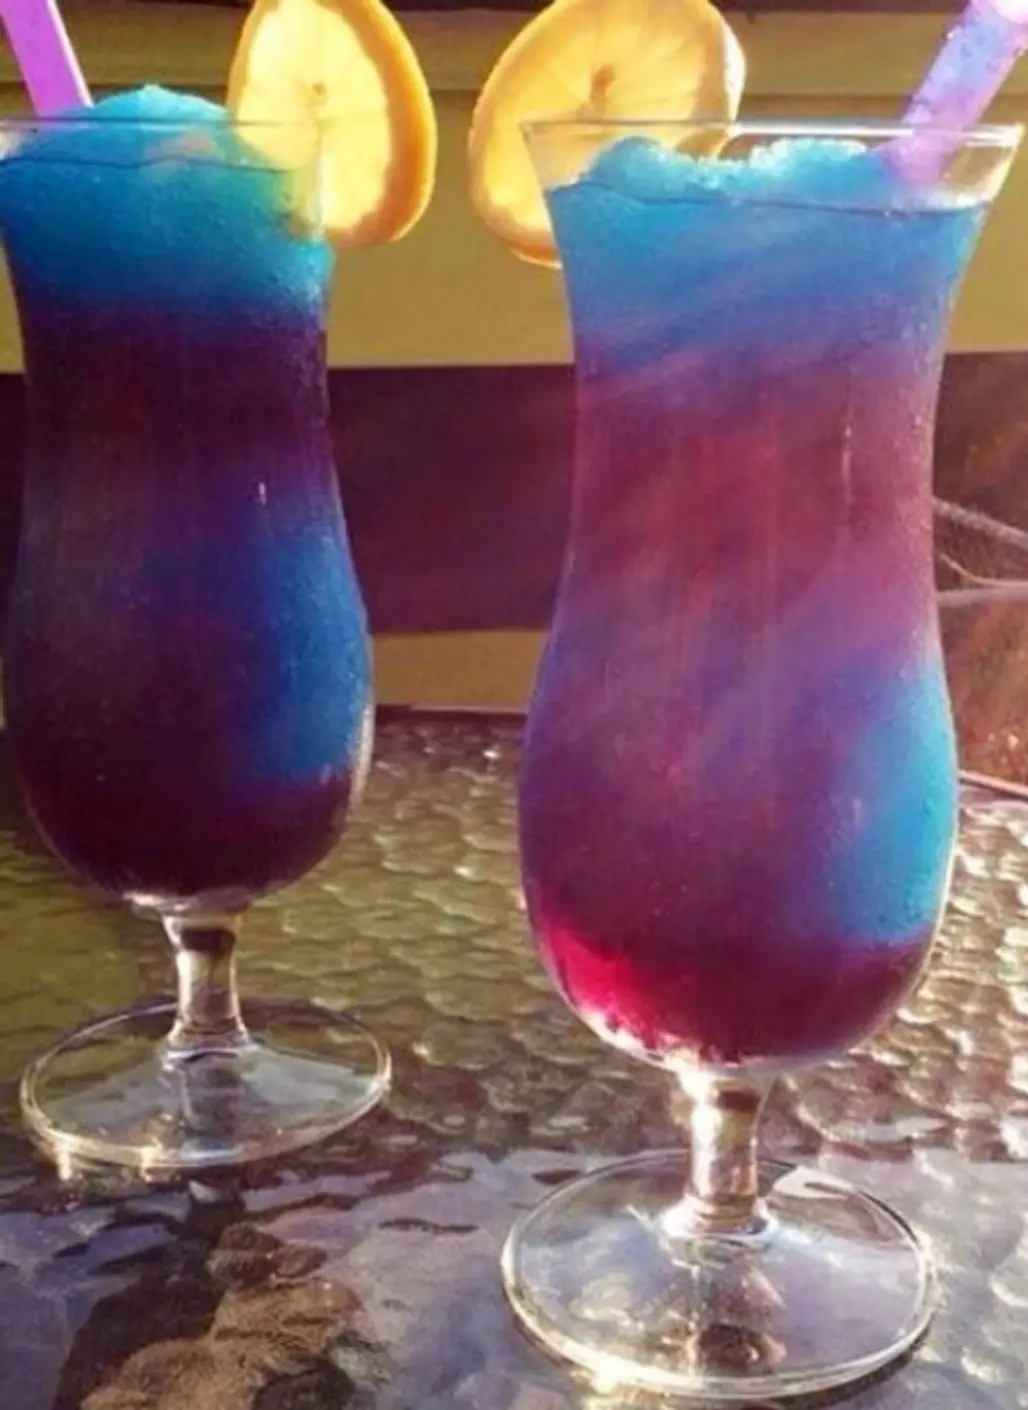 Galaxy Cocktail